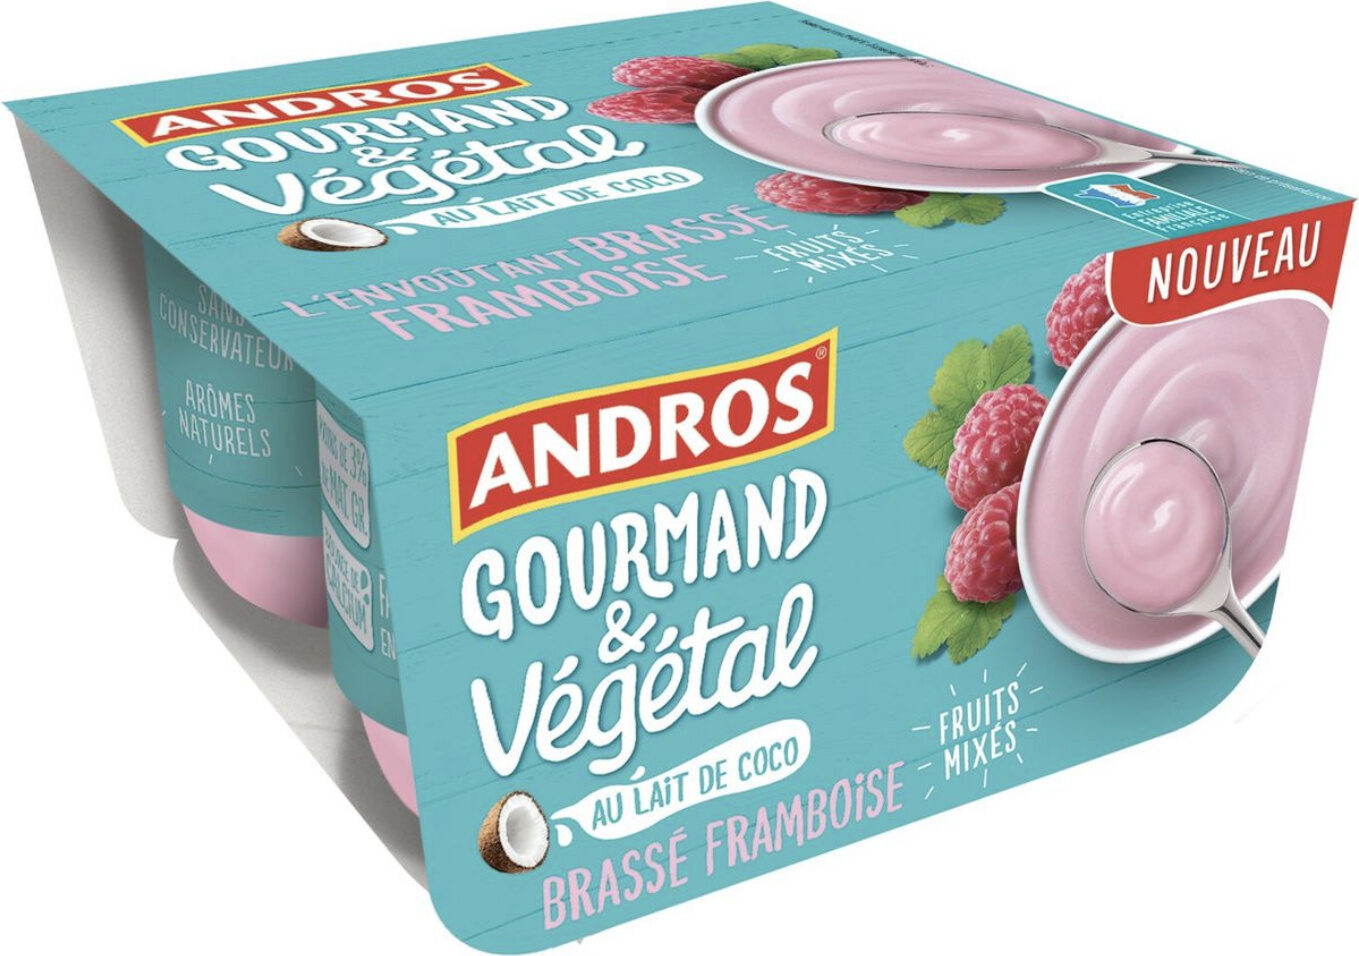 Gourmand & Végétal Brassé framboise - Product - fr